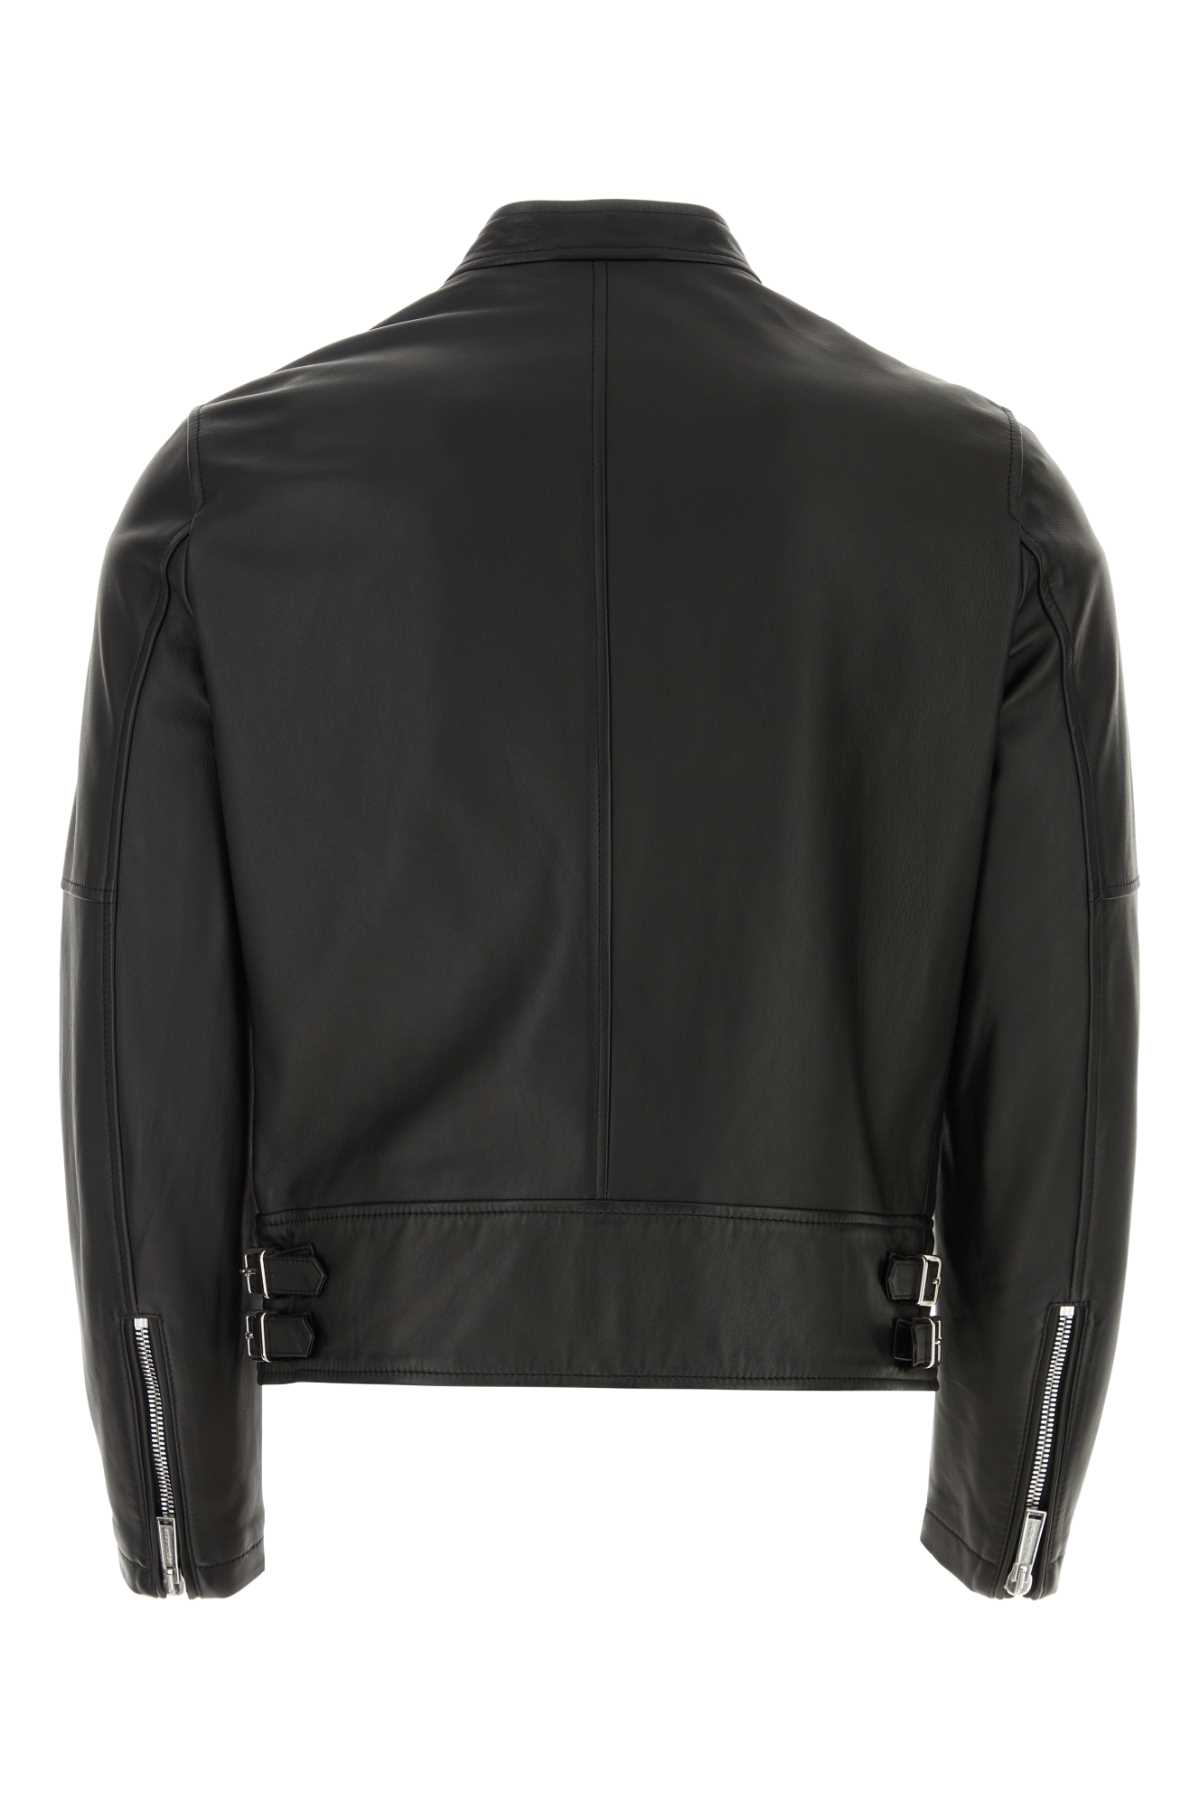 Dsquared2 Black Leather Biker Jacket